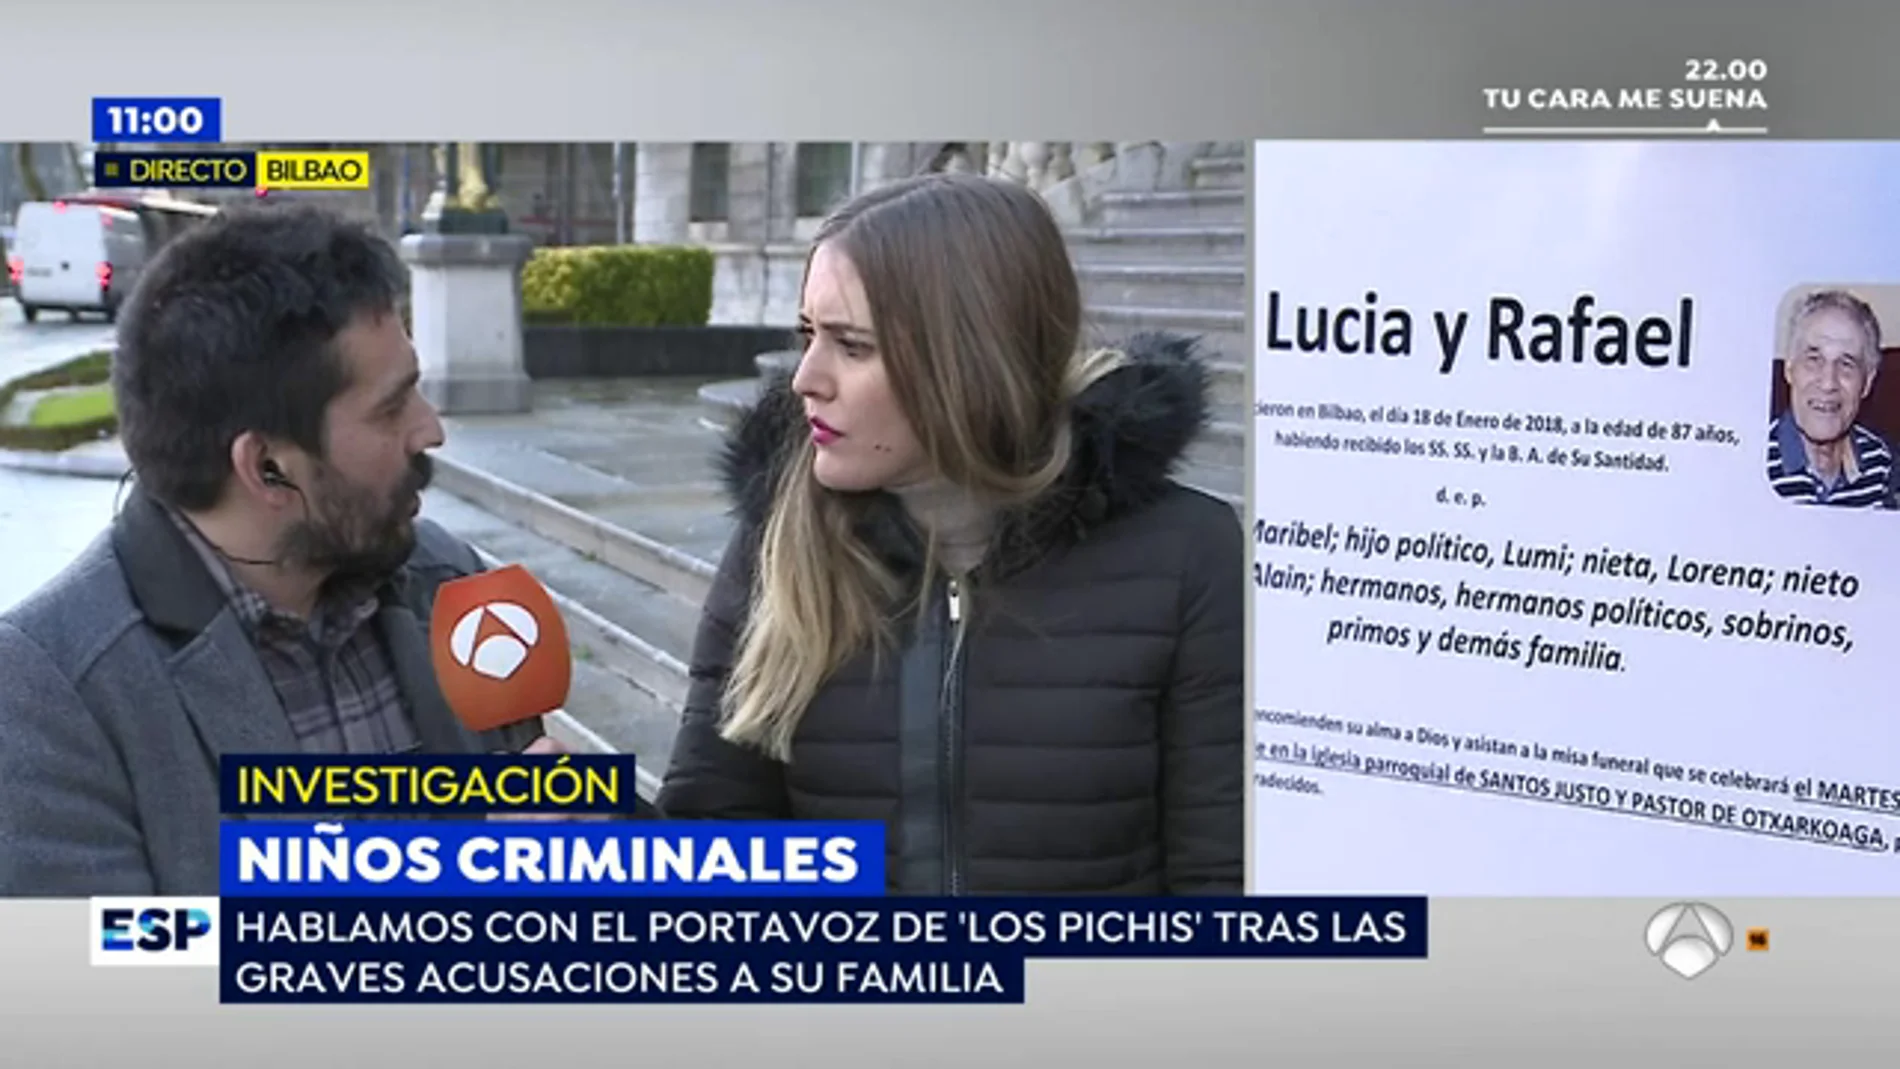 El portavoz de 'Los Pichis' denuncia el acoso que viven tras el asesinato de los ancianos en Bilbao: "No tenemos nada que ver"